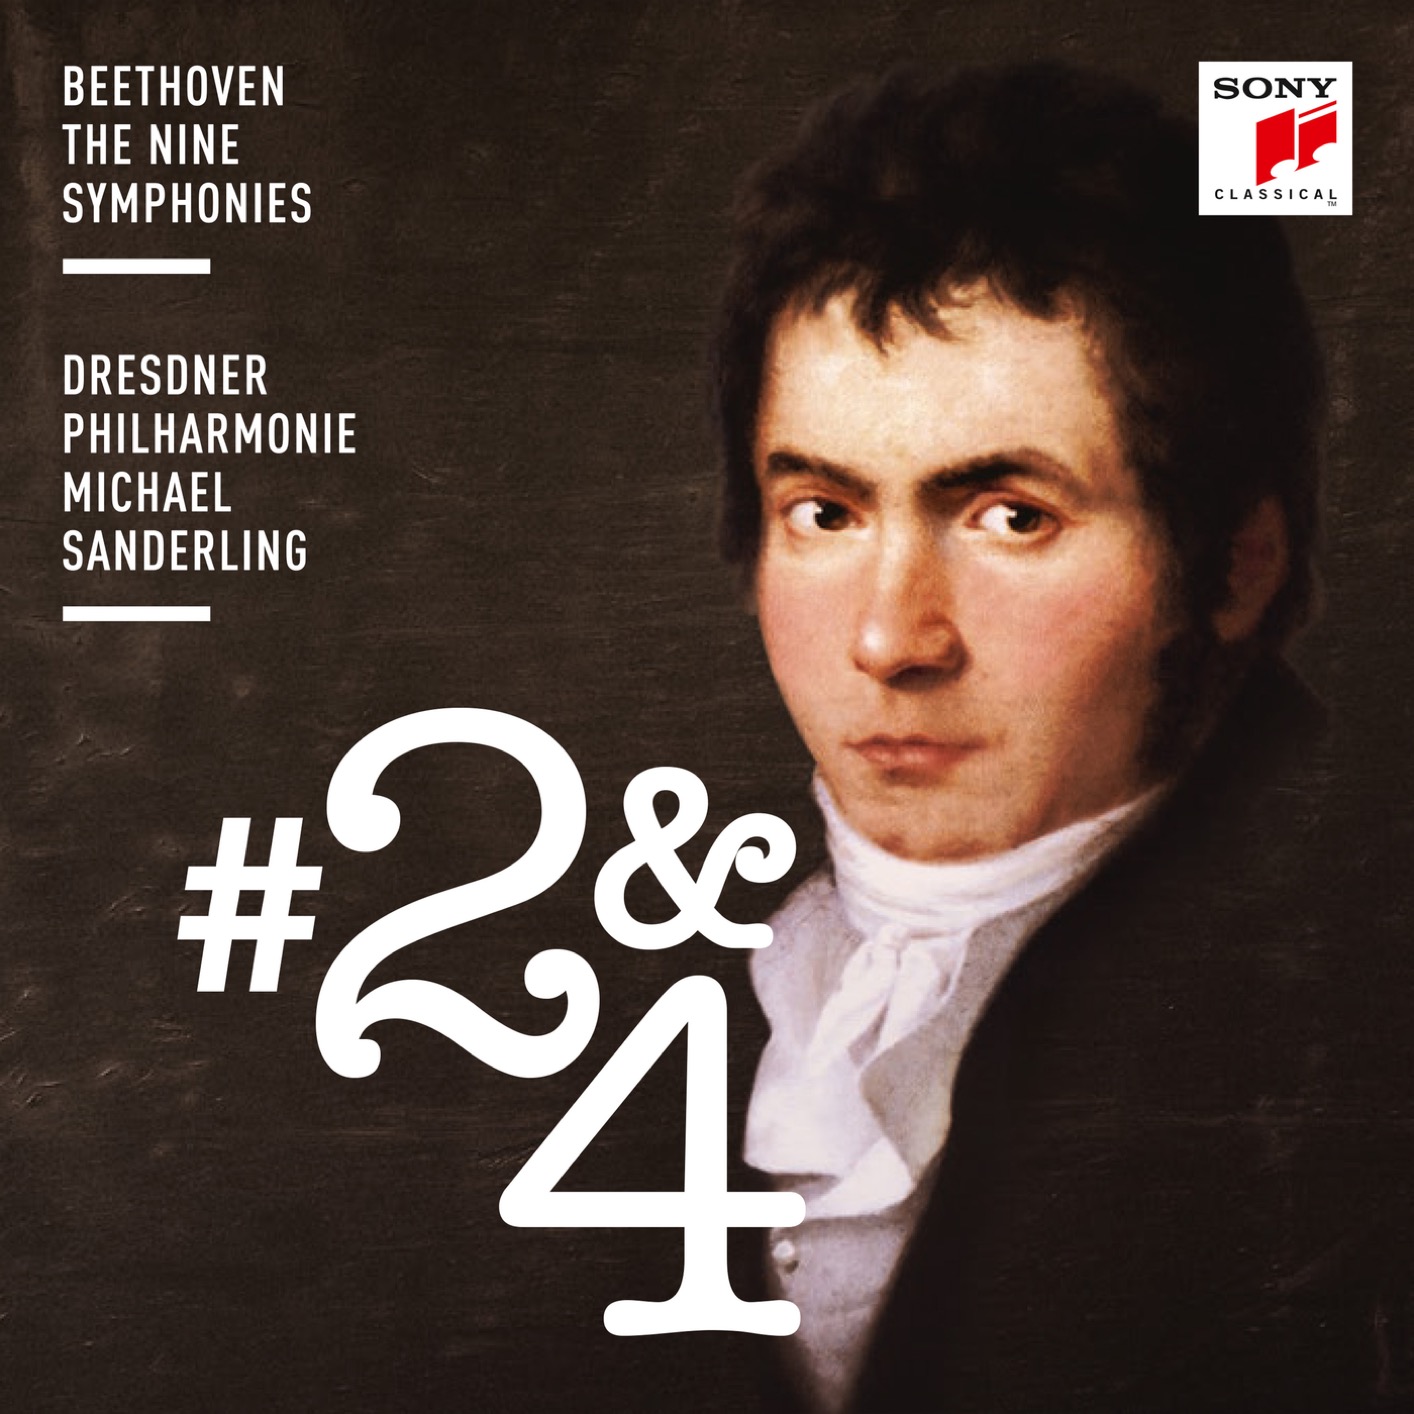 Dresdner Philharmonie & Michael Sanderling – Beethoven: Symphonies Nos. 2 & 4 (2018) [FLAC 24bit/96kHz]